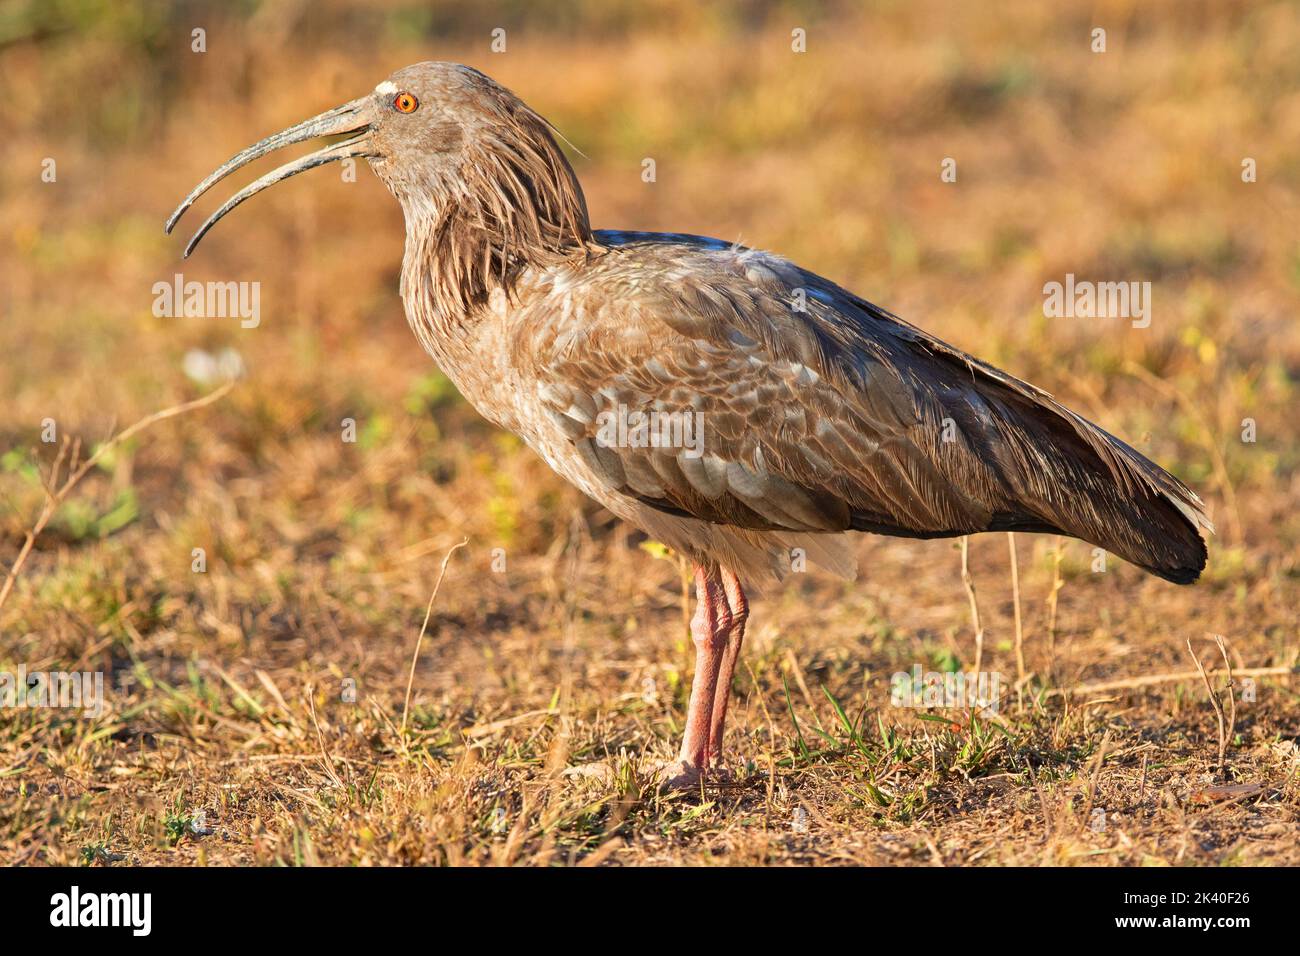 Plumbeous ibis (Theristicus caerulescens), in piedi con il conto delicatamente aperto, Brasile, Pantanal Foto Stock